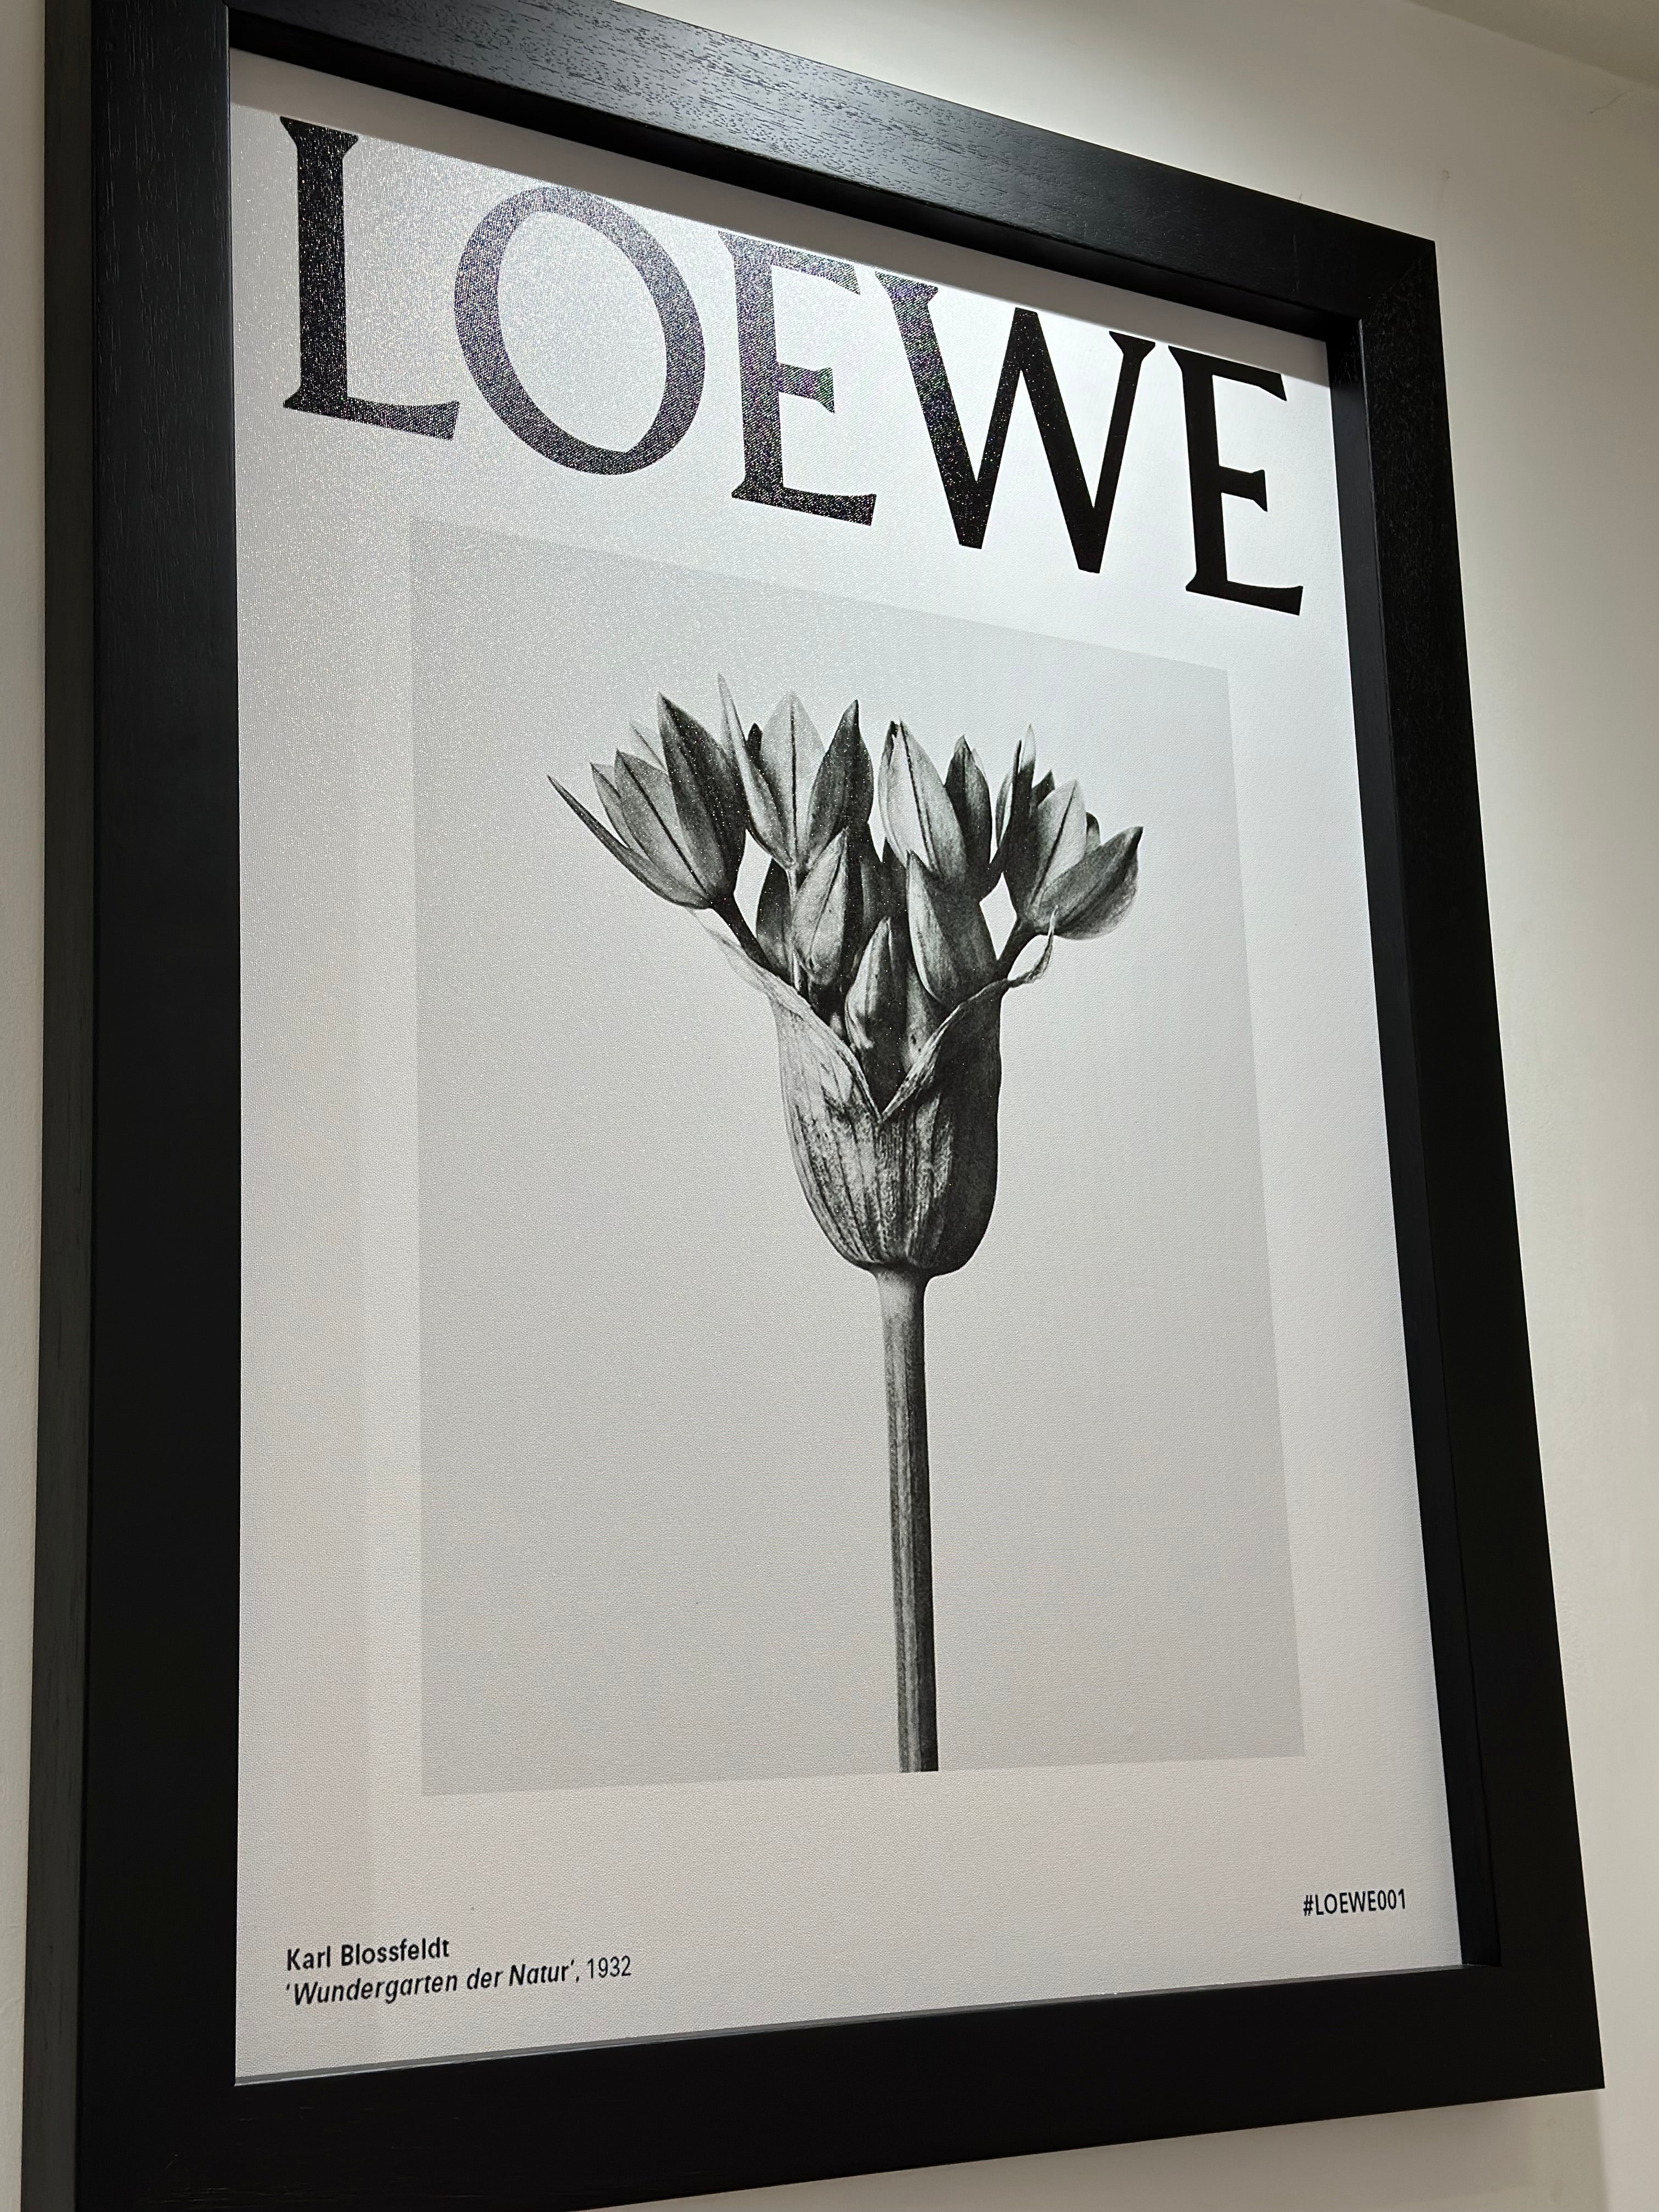 #LOEWE001 Framed Print